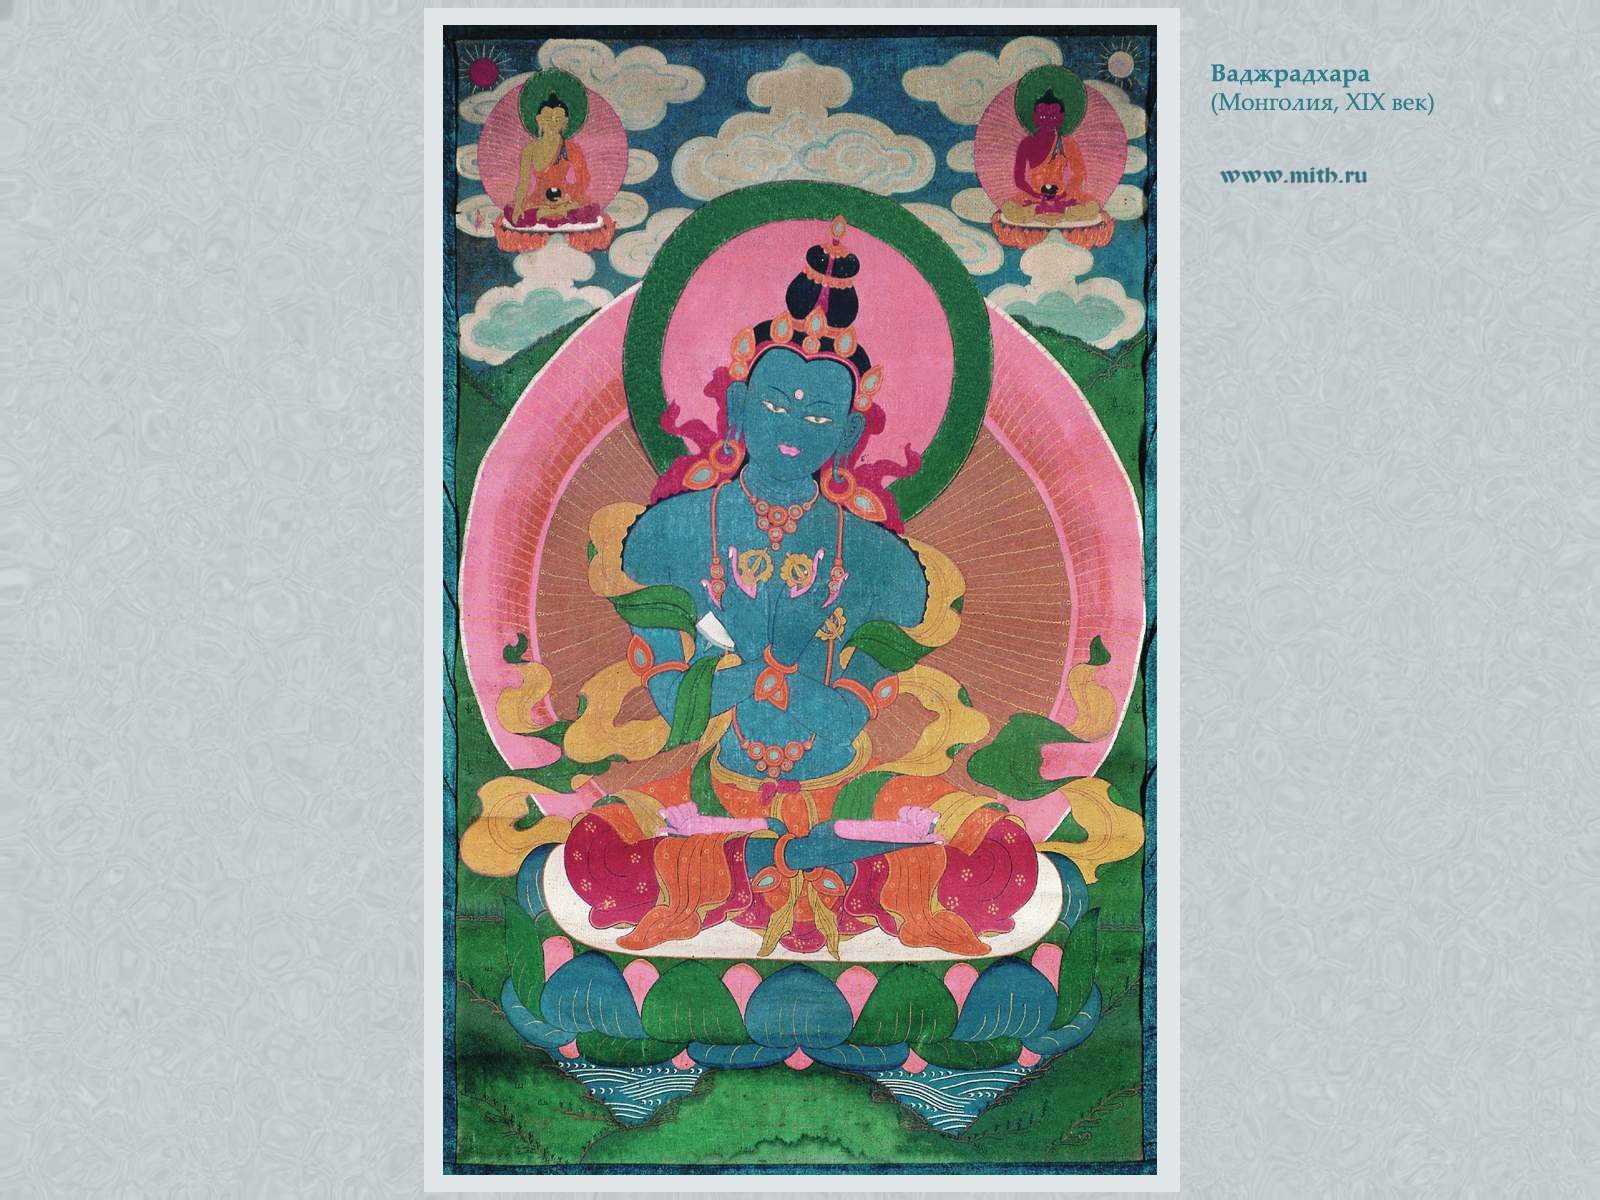 Ваджрадхара

перейти к книге 'Тибетская живопись'